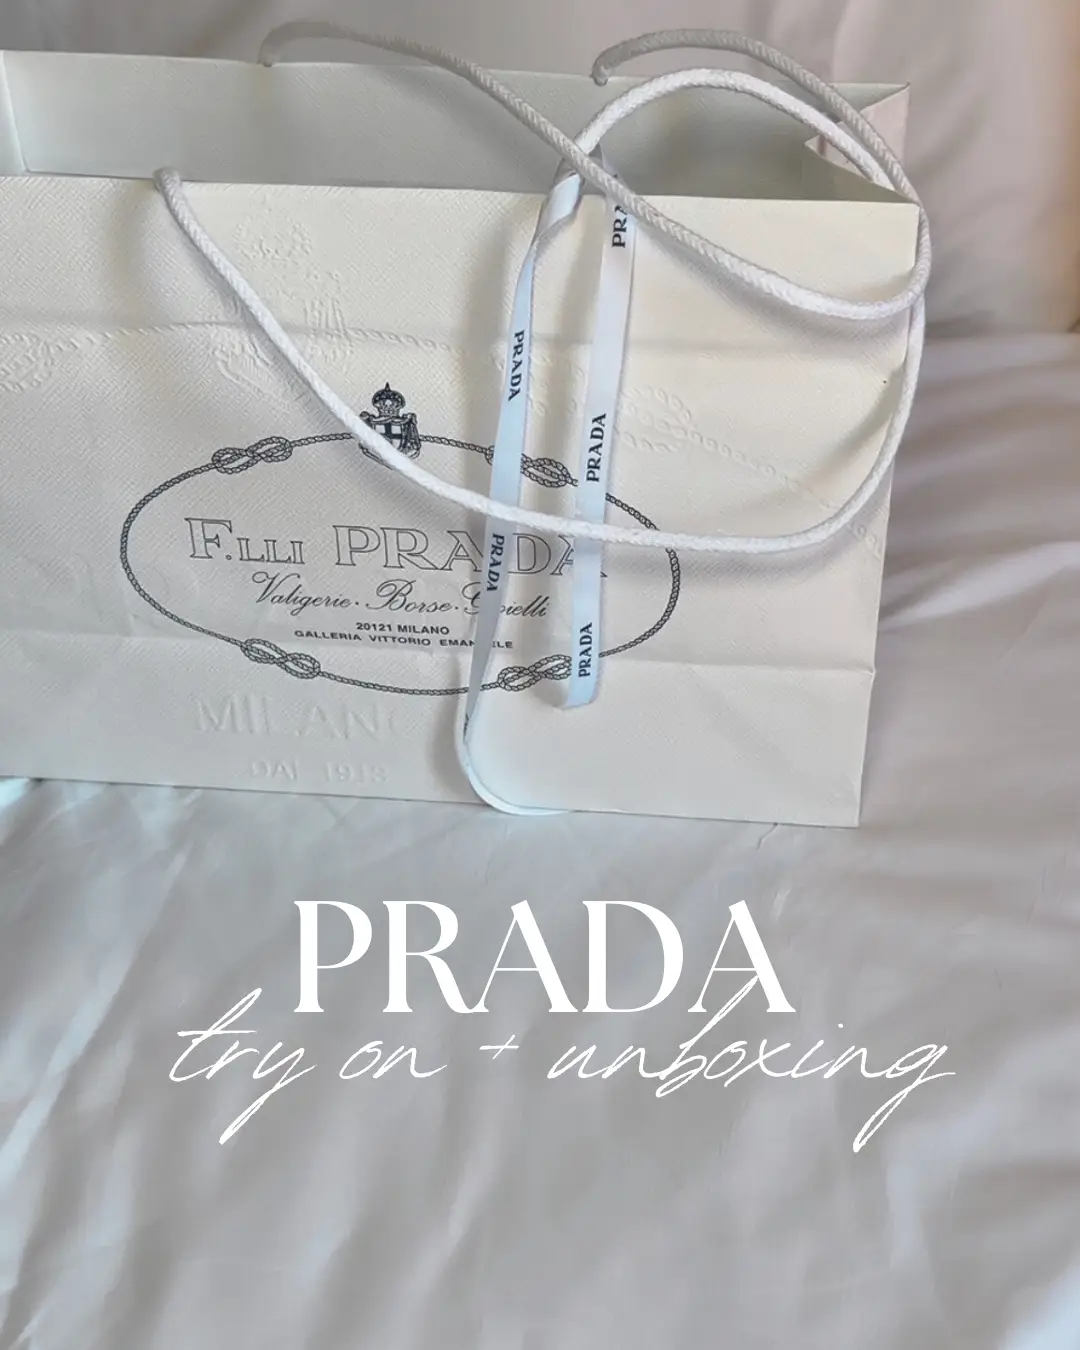 Prada Galleria Unboxing! ~ White Prada Galleria Saffiano Leather